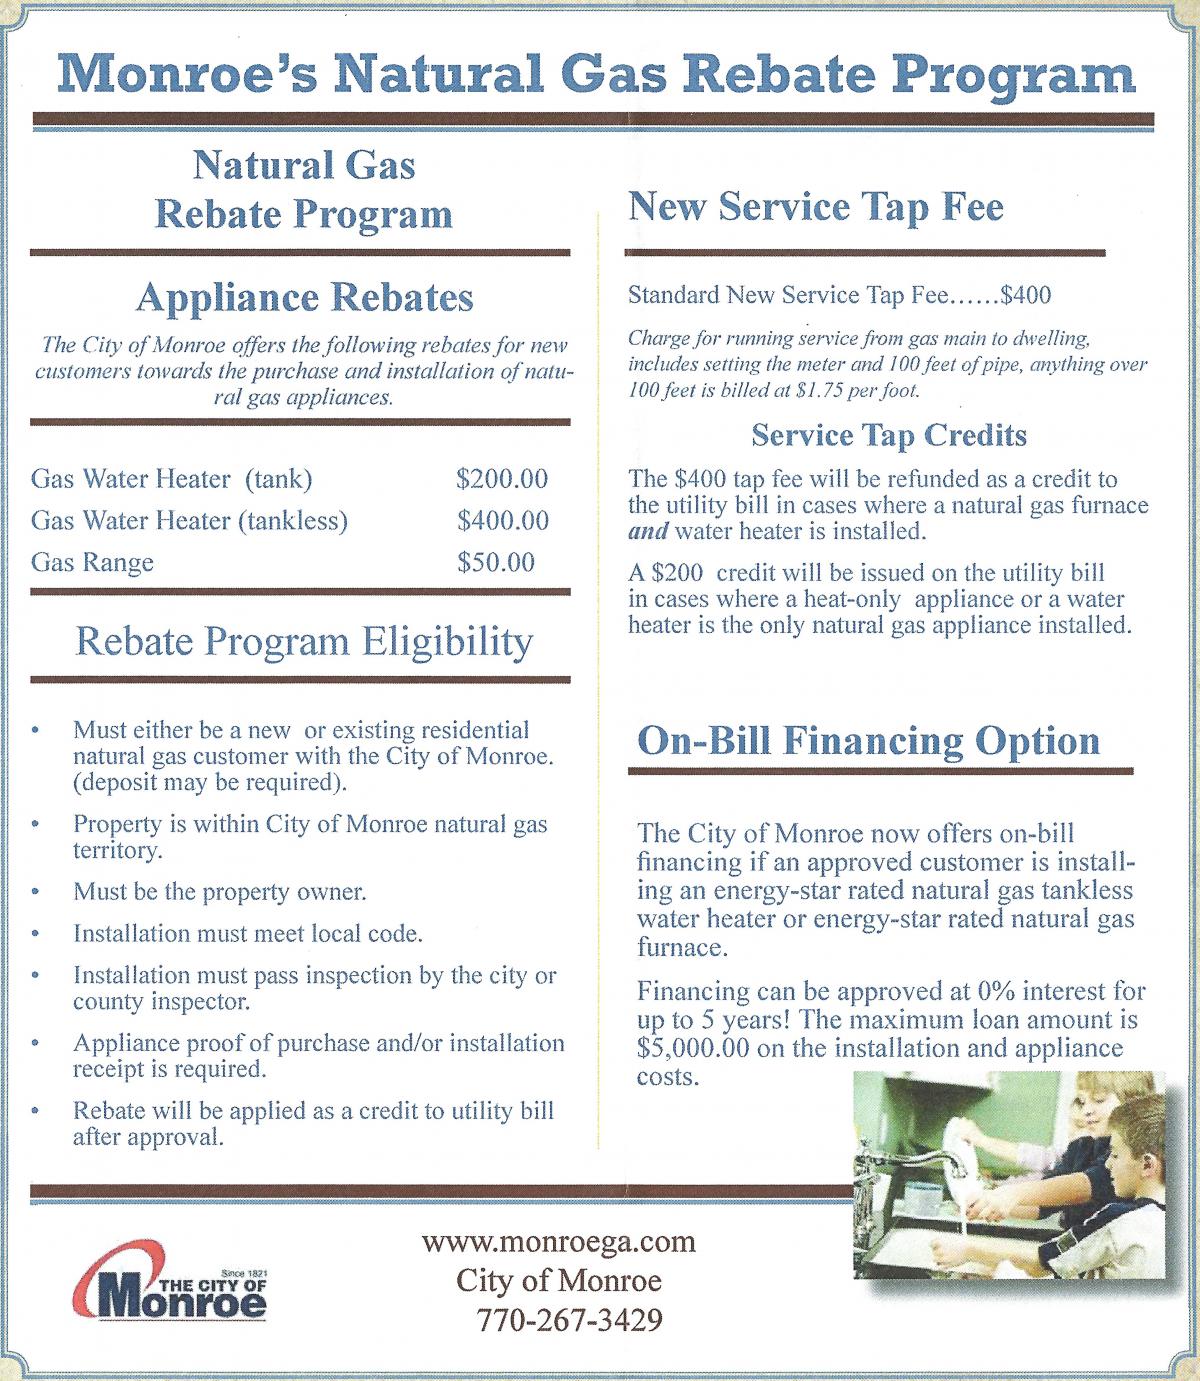 Natural Gas Rebate Program